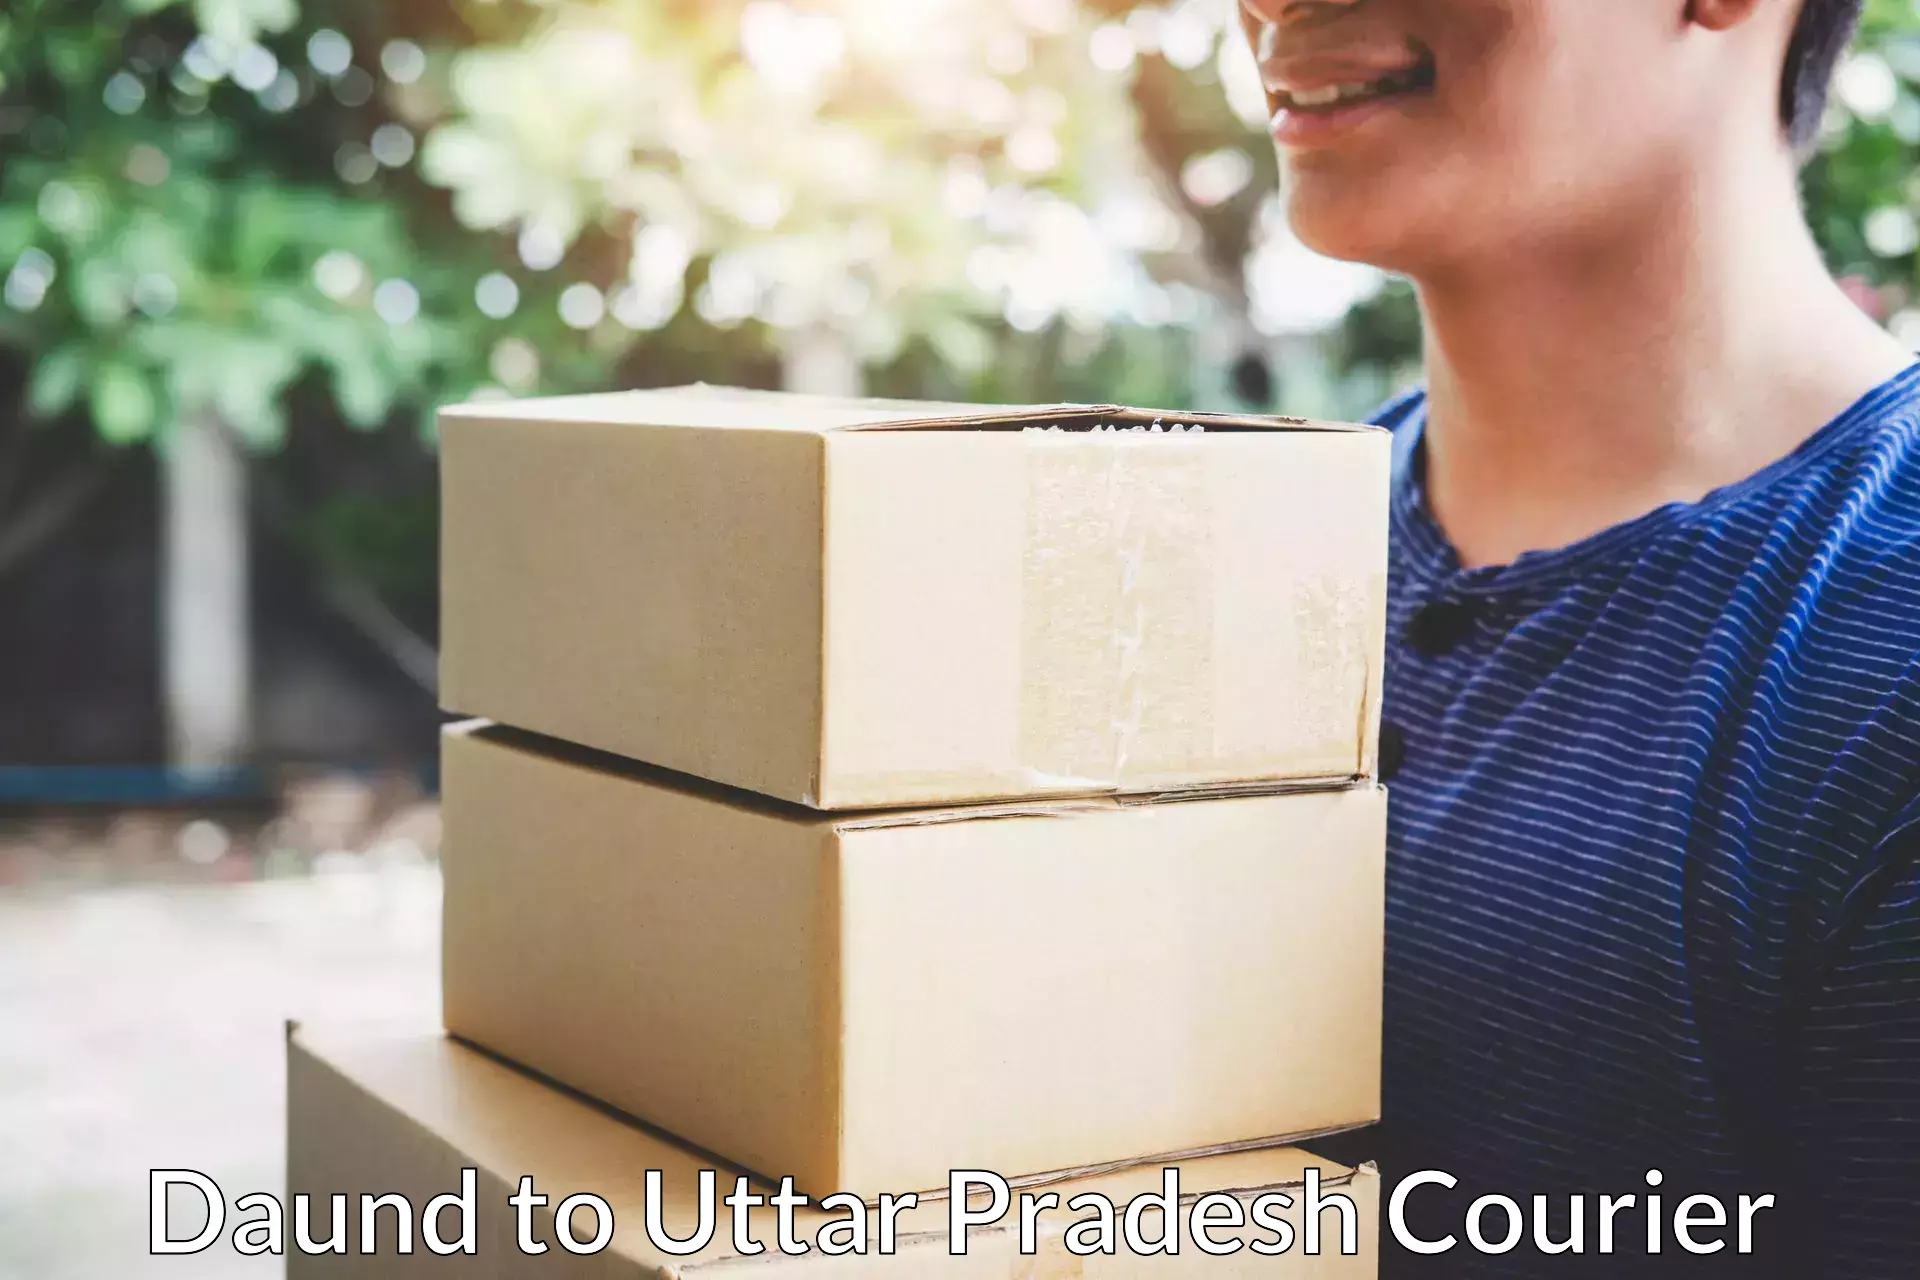 Furniture delivery service Daund to Uttar Pradesh